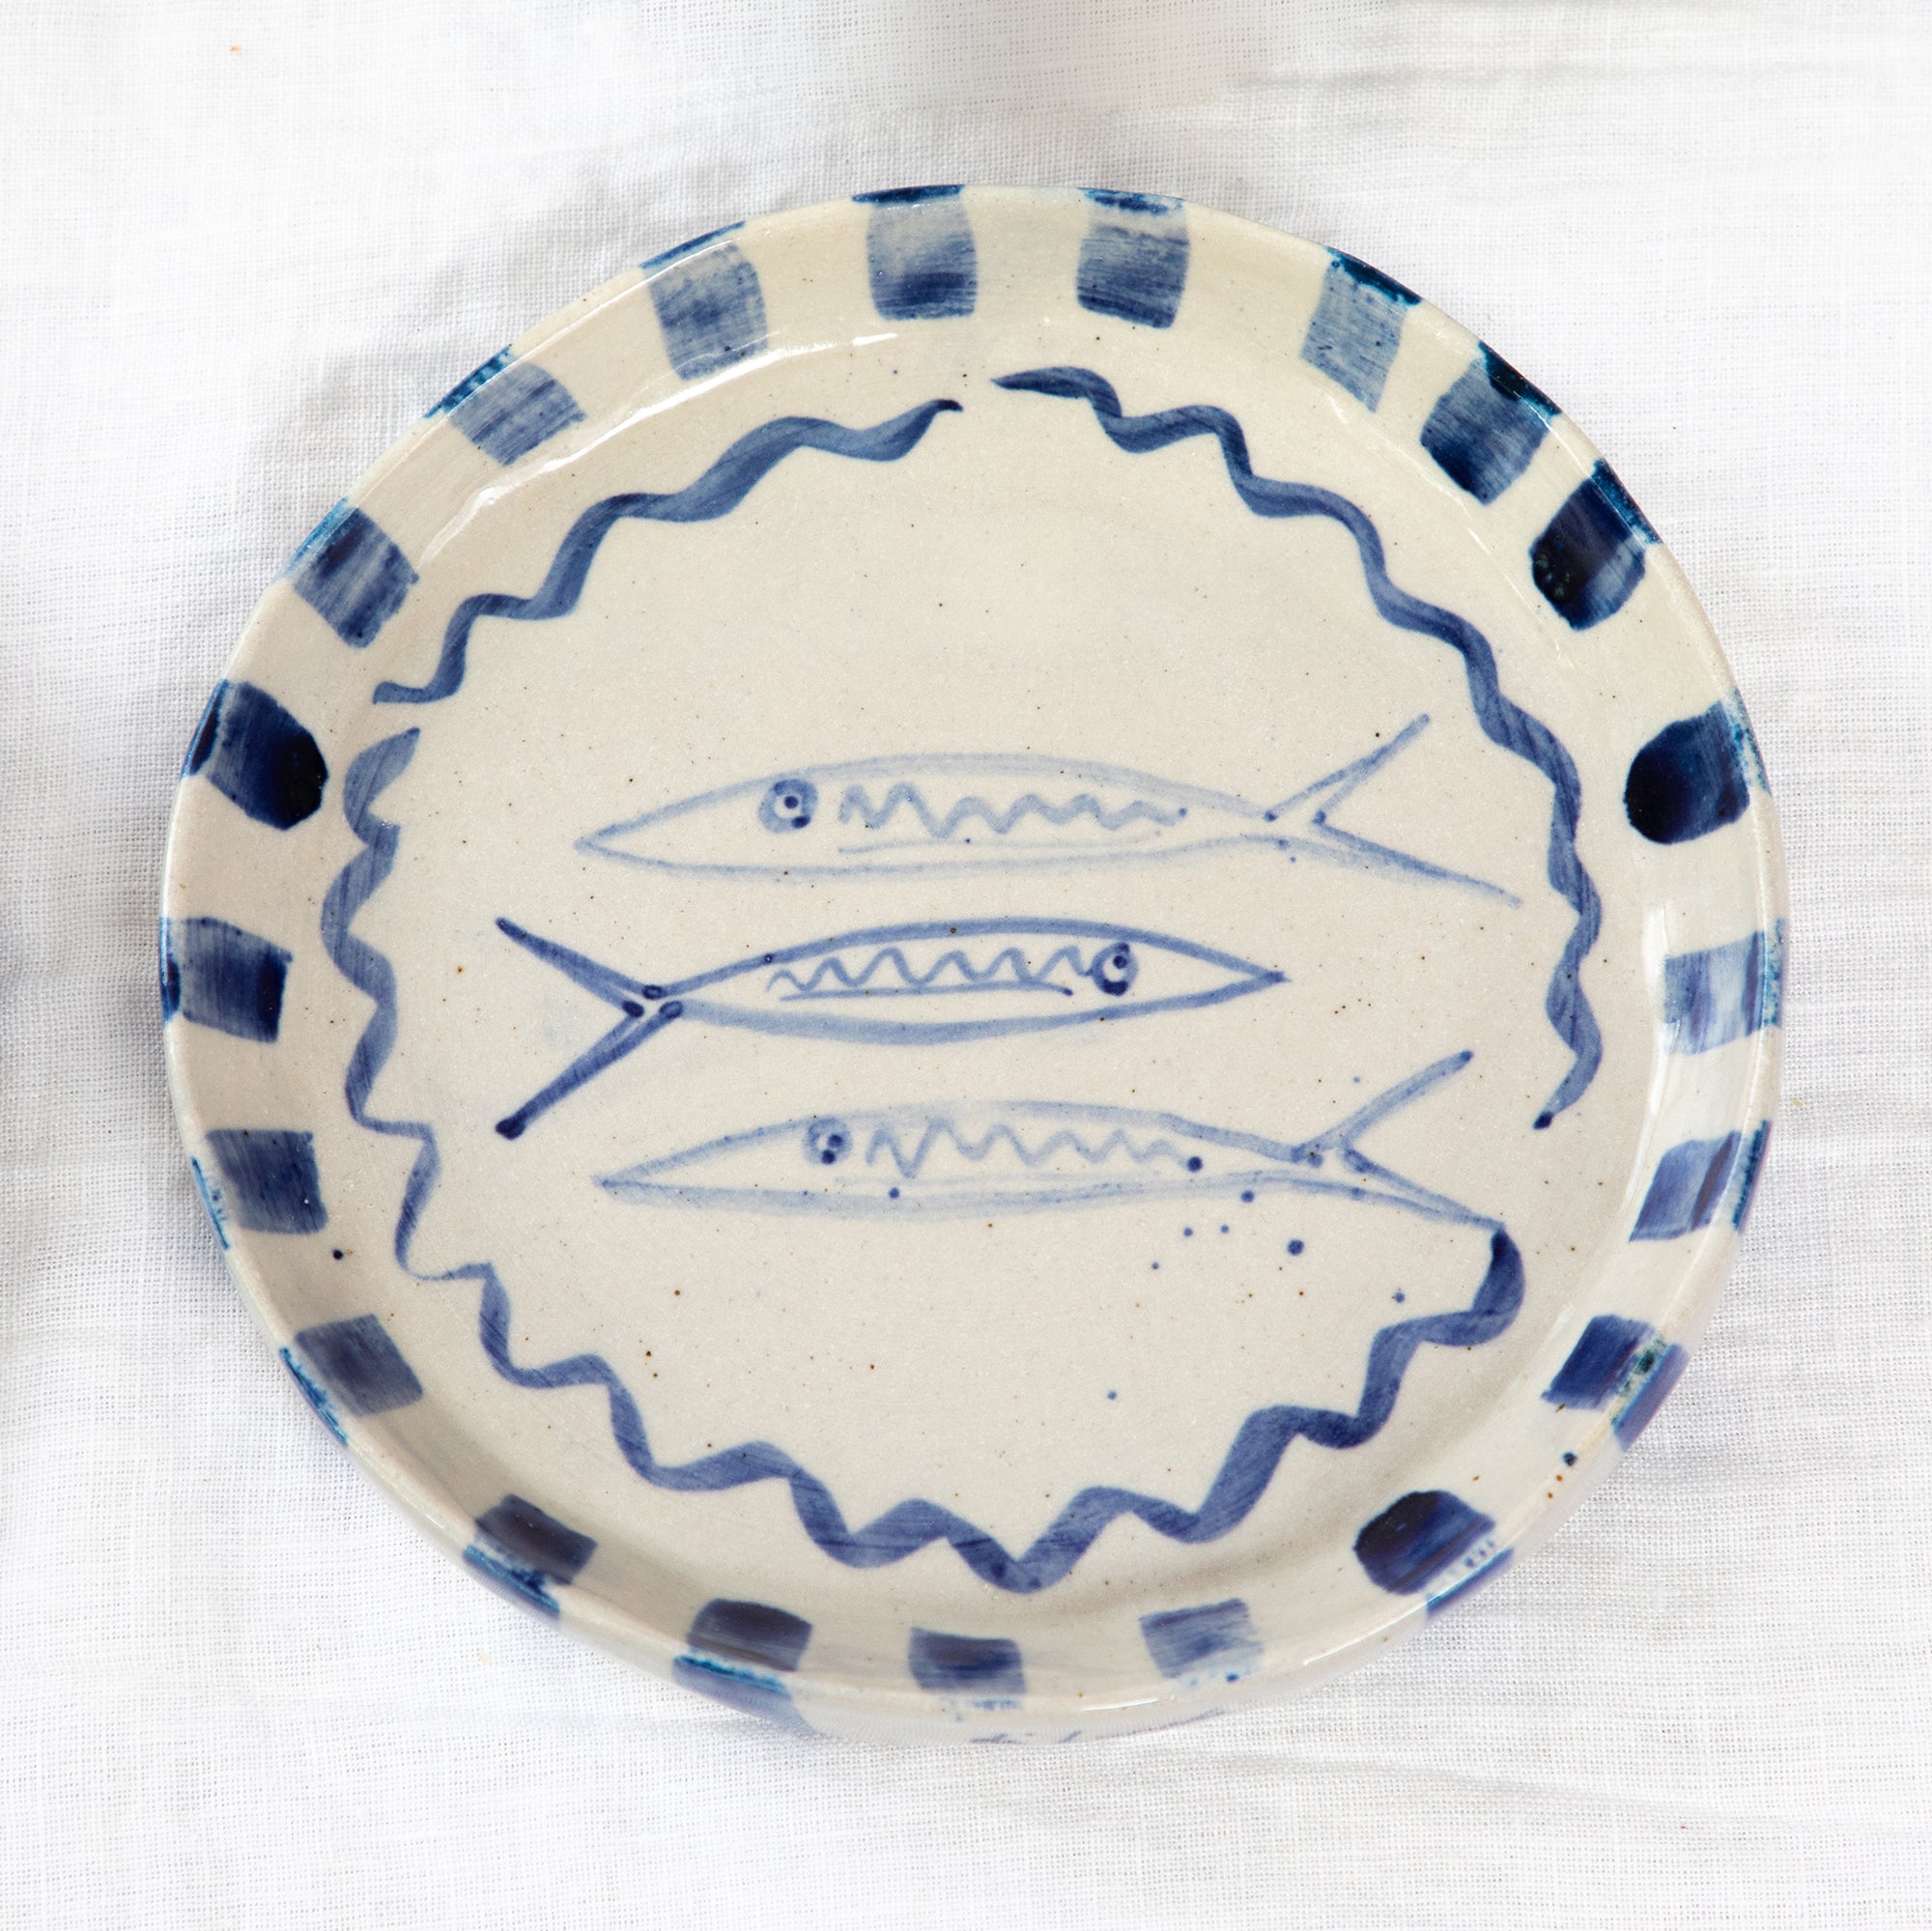 Hand Built Sardine Plate - Mediterranean Blue